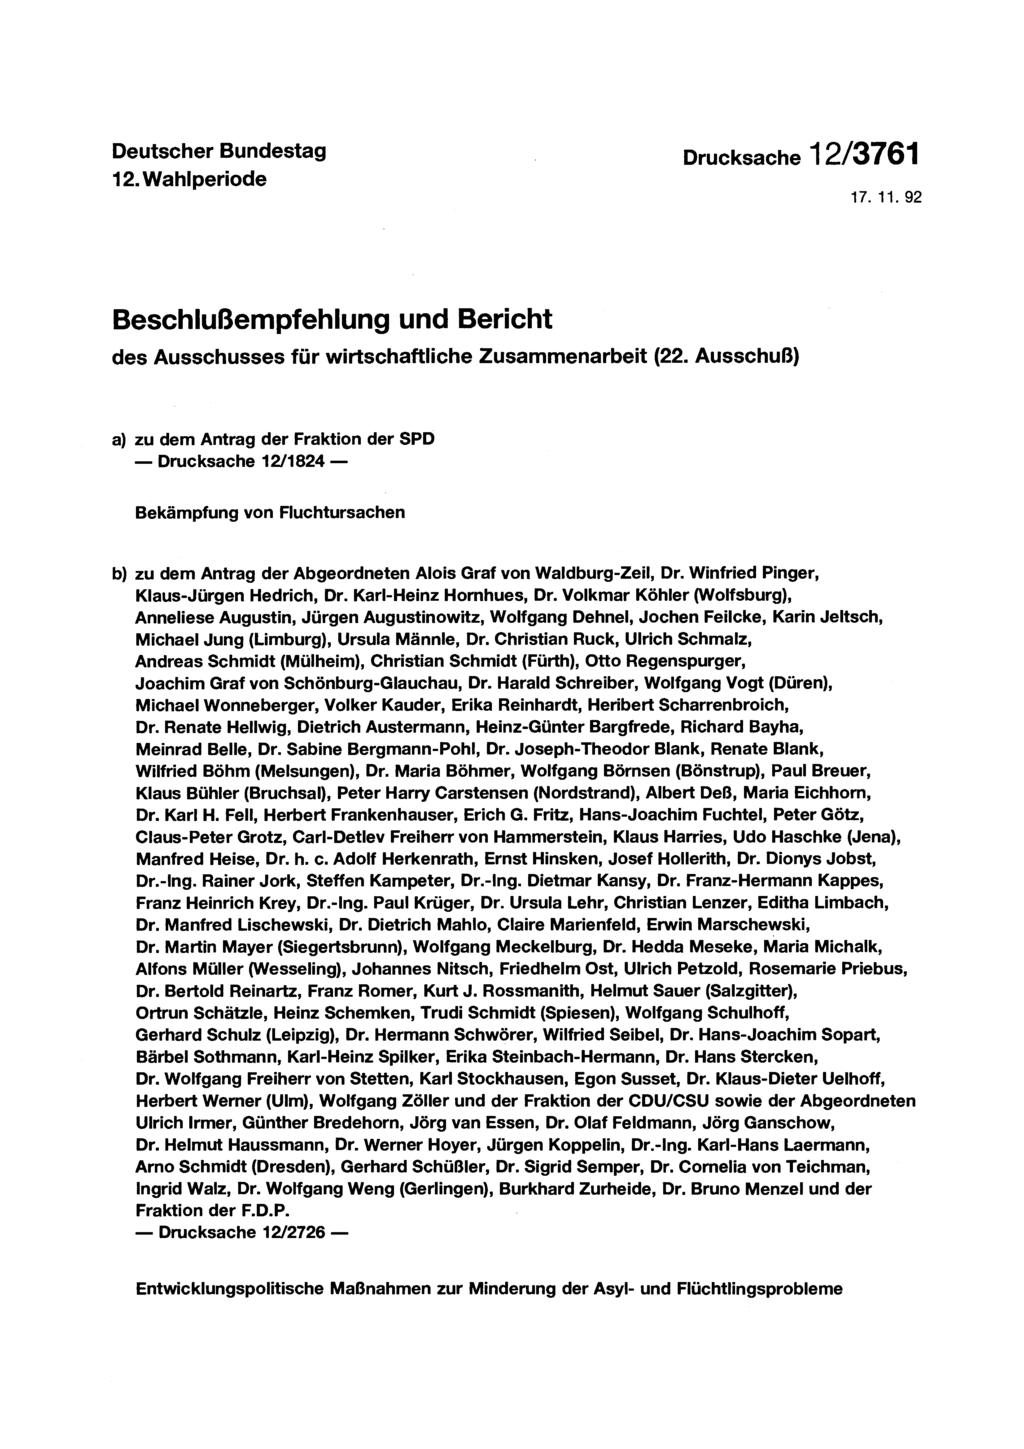 Deutscher Bundestag 12. Wahlperiode 17.11.92 Beschlußempfehlung und Bericht des Ausschusses für wirtschaftliche Zusammenarbeit (22.